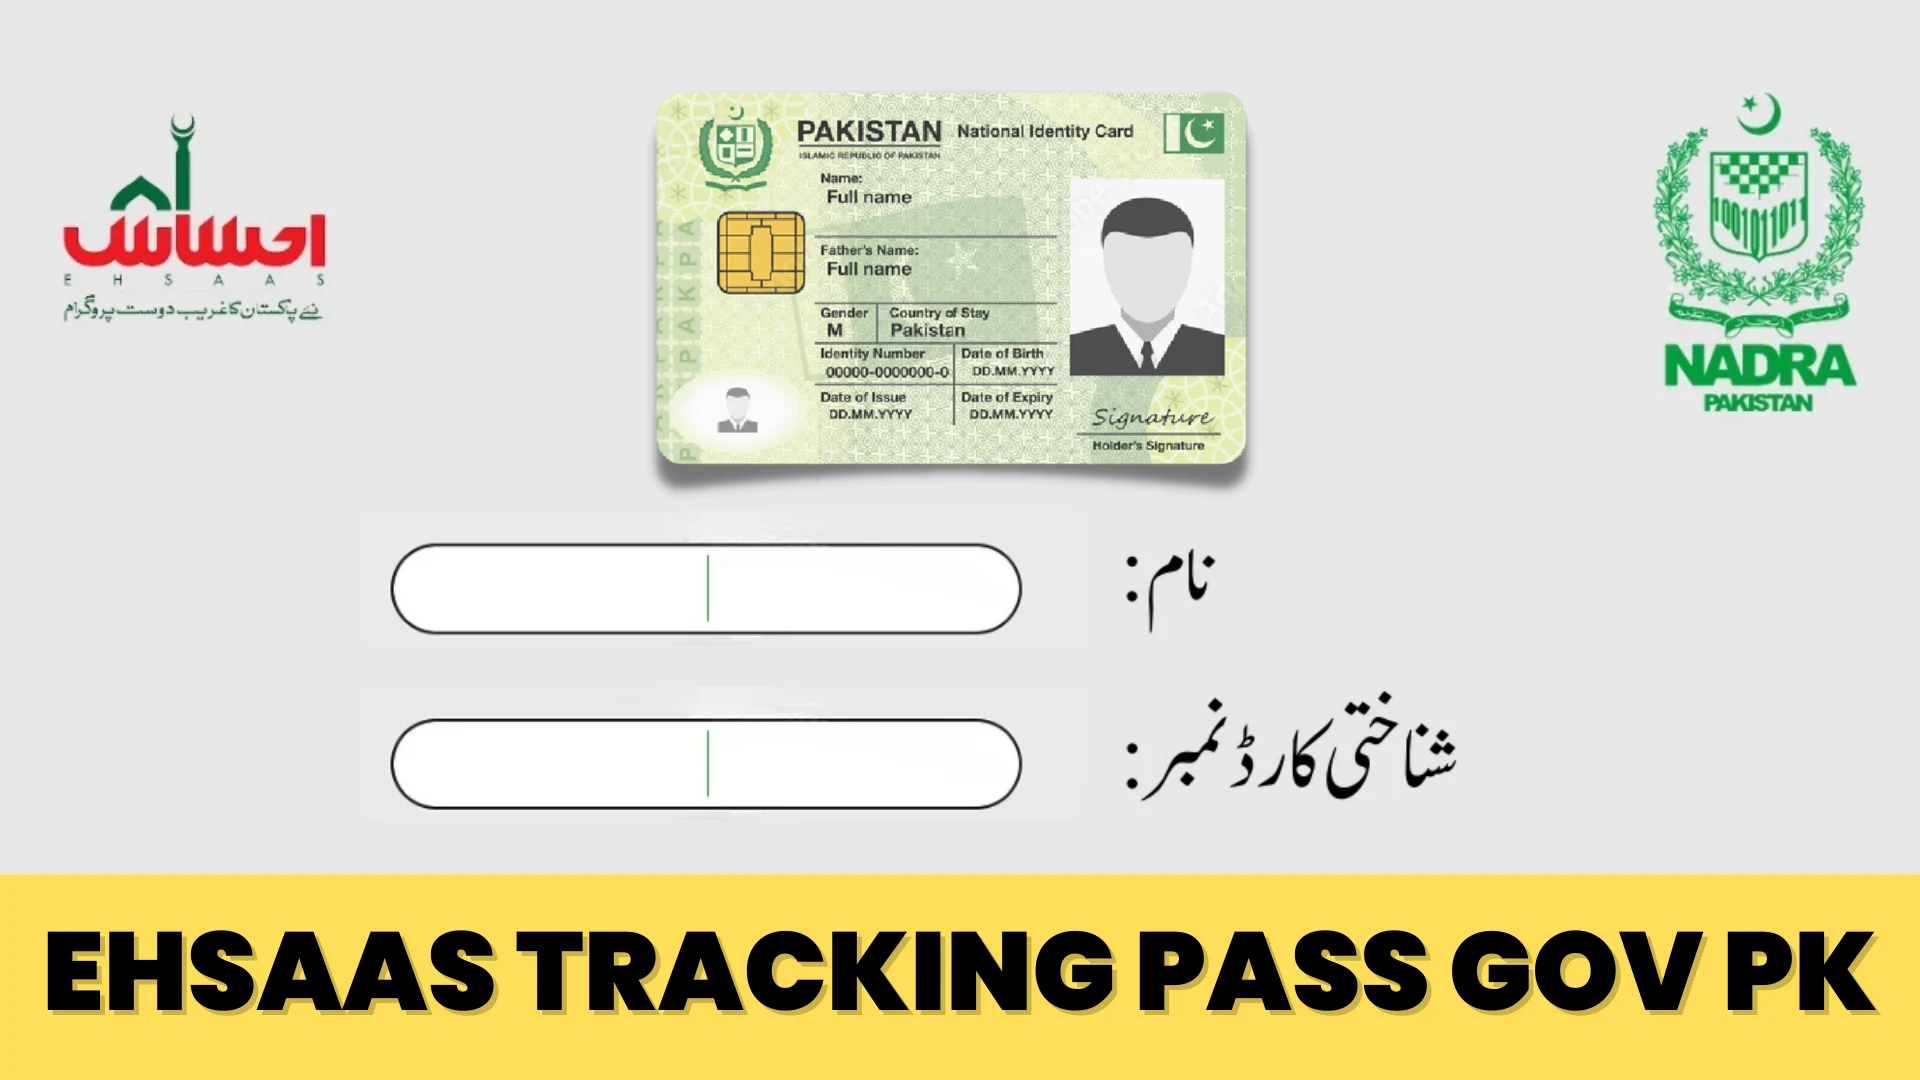 Ehsaas Tracking pass gov Pk